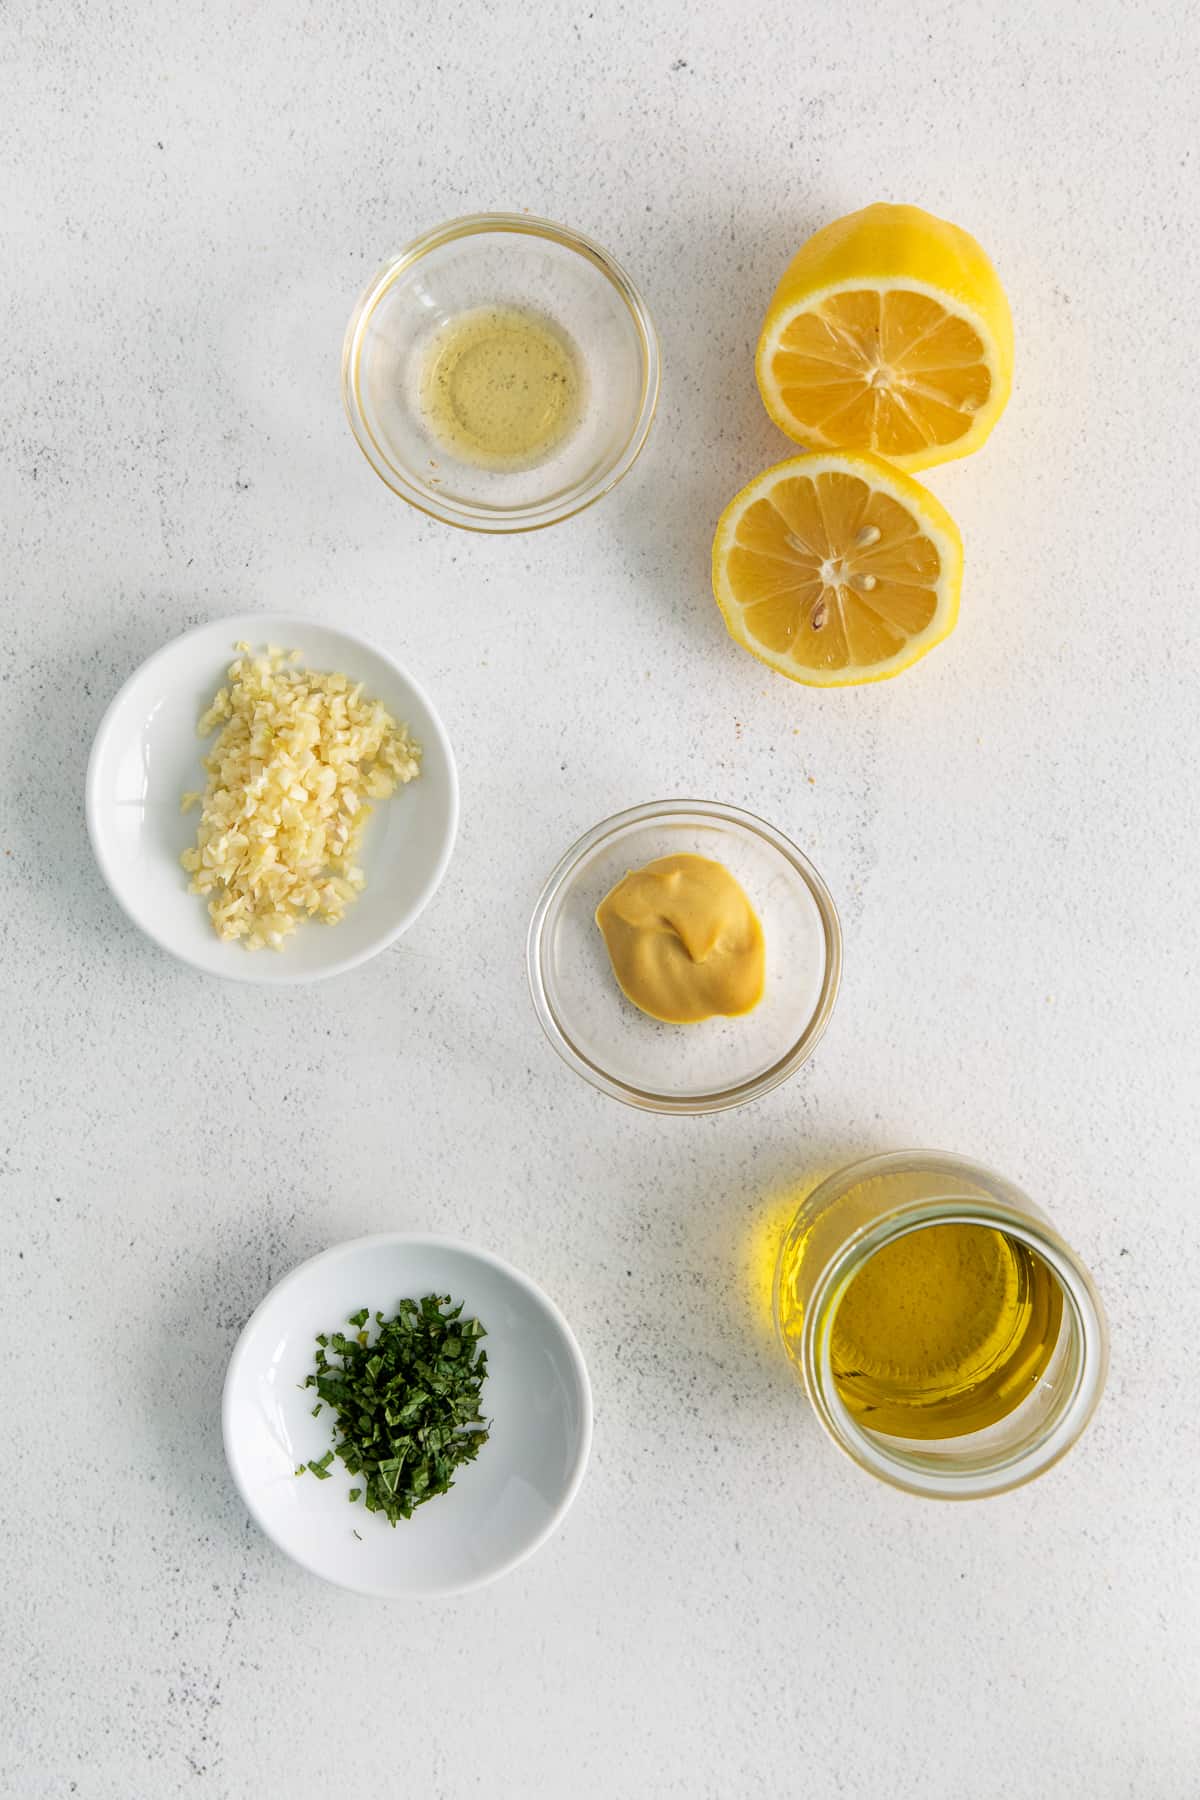 Ingredients for lemon vinaigrette in bowls.